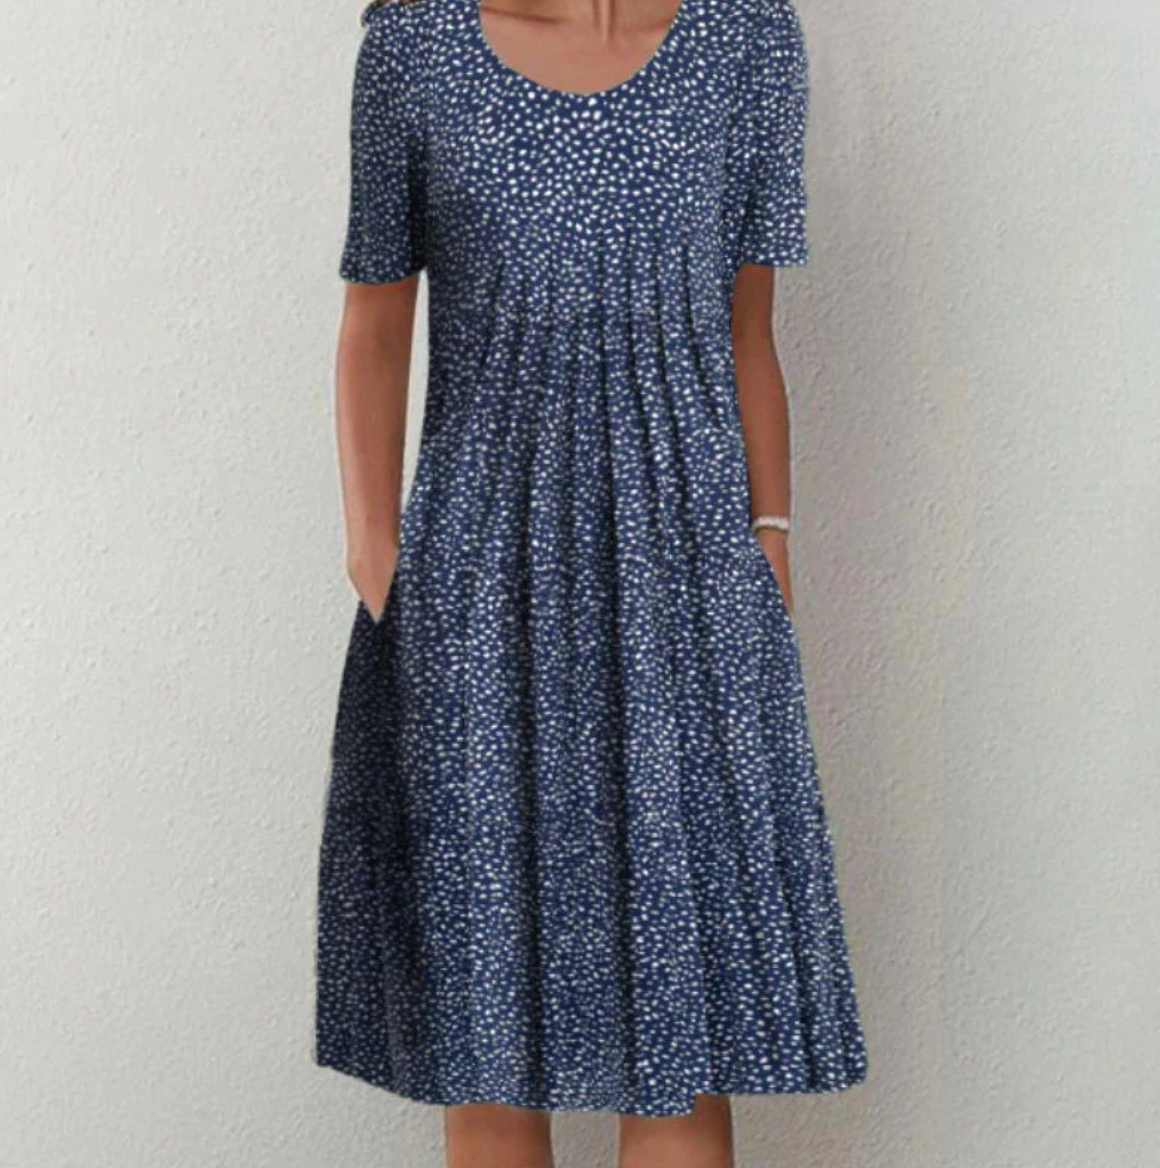 Martina™ Dress with stylish pattern 